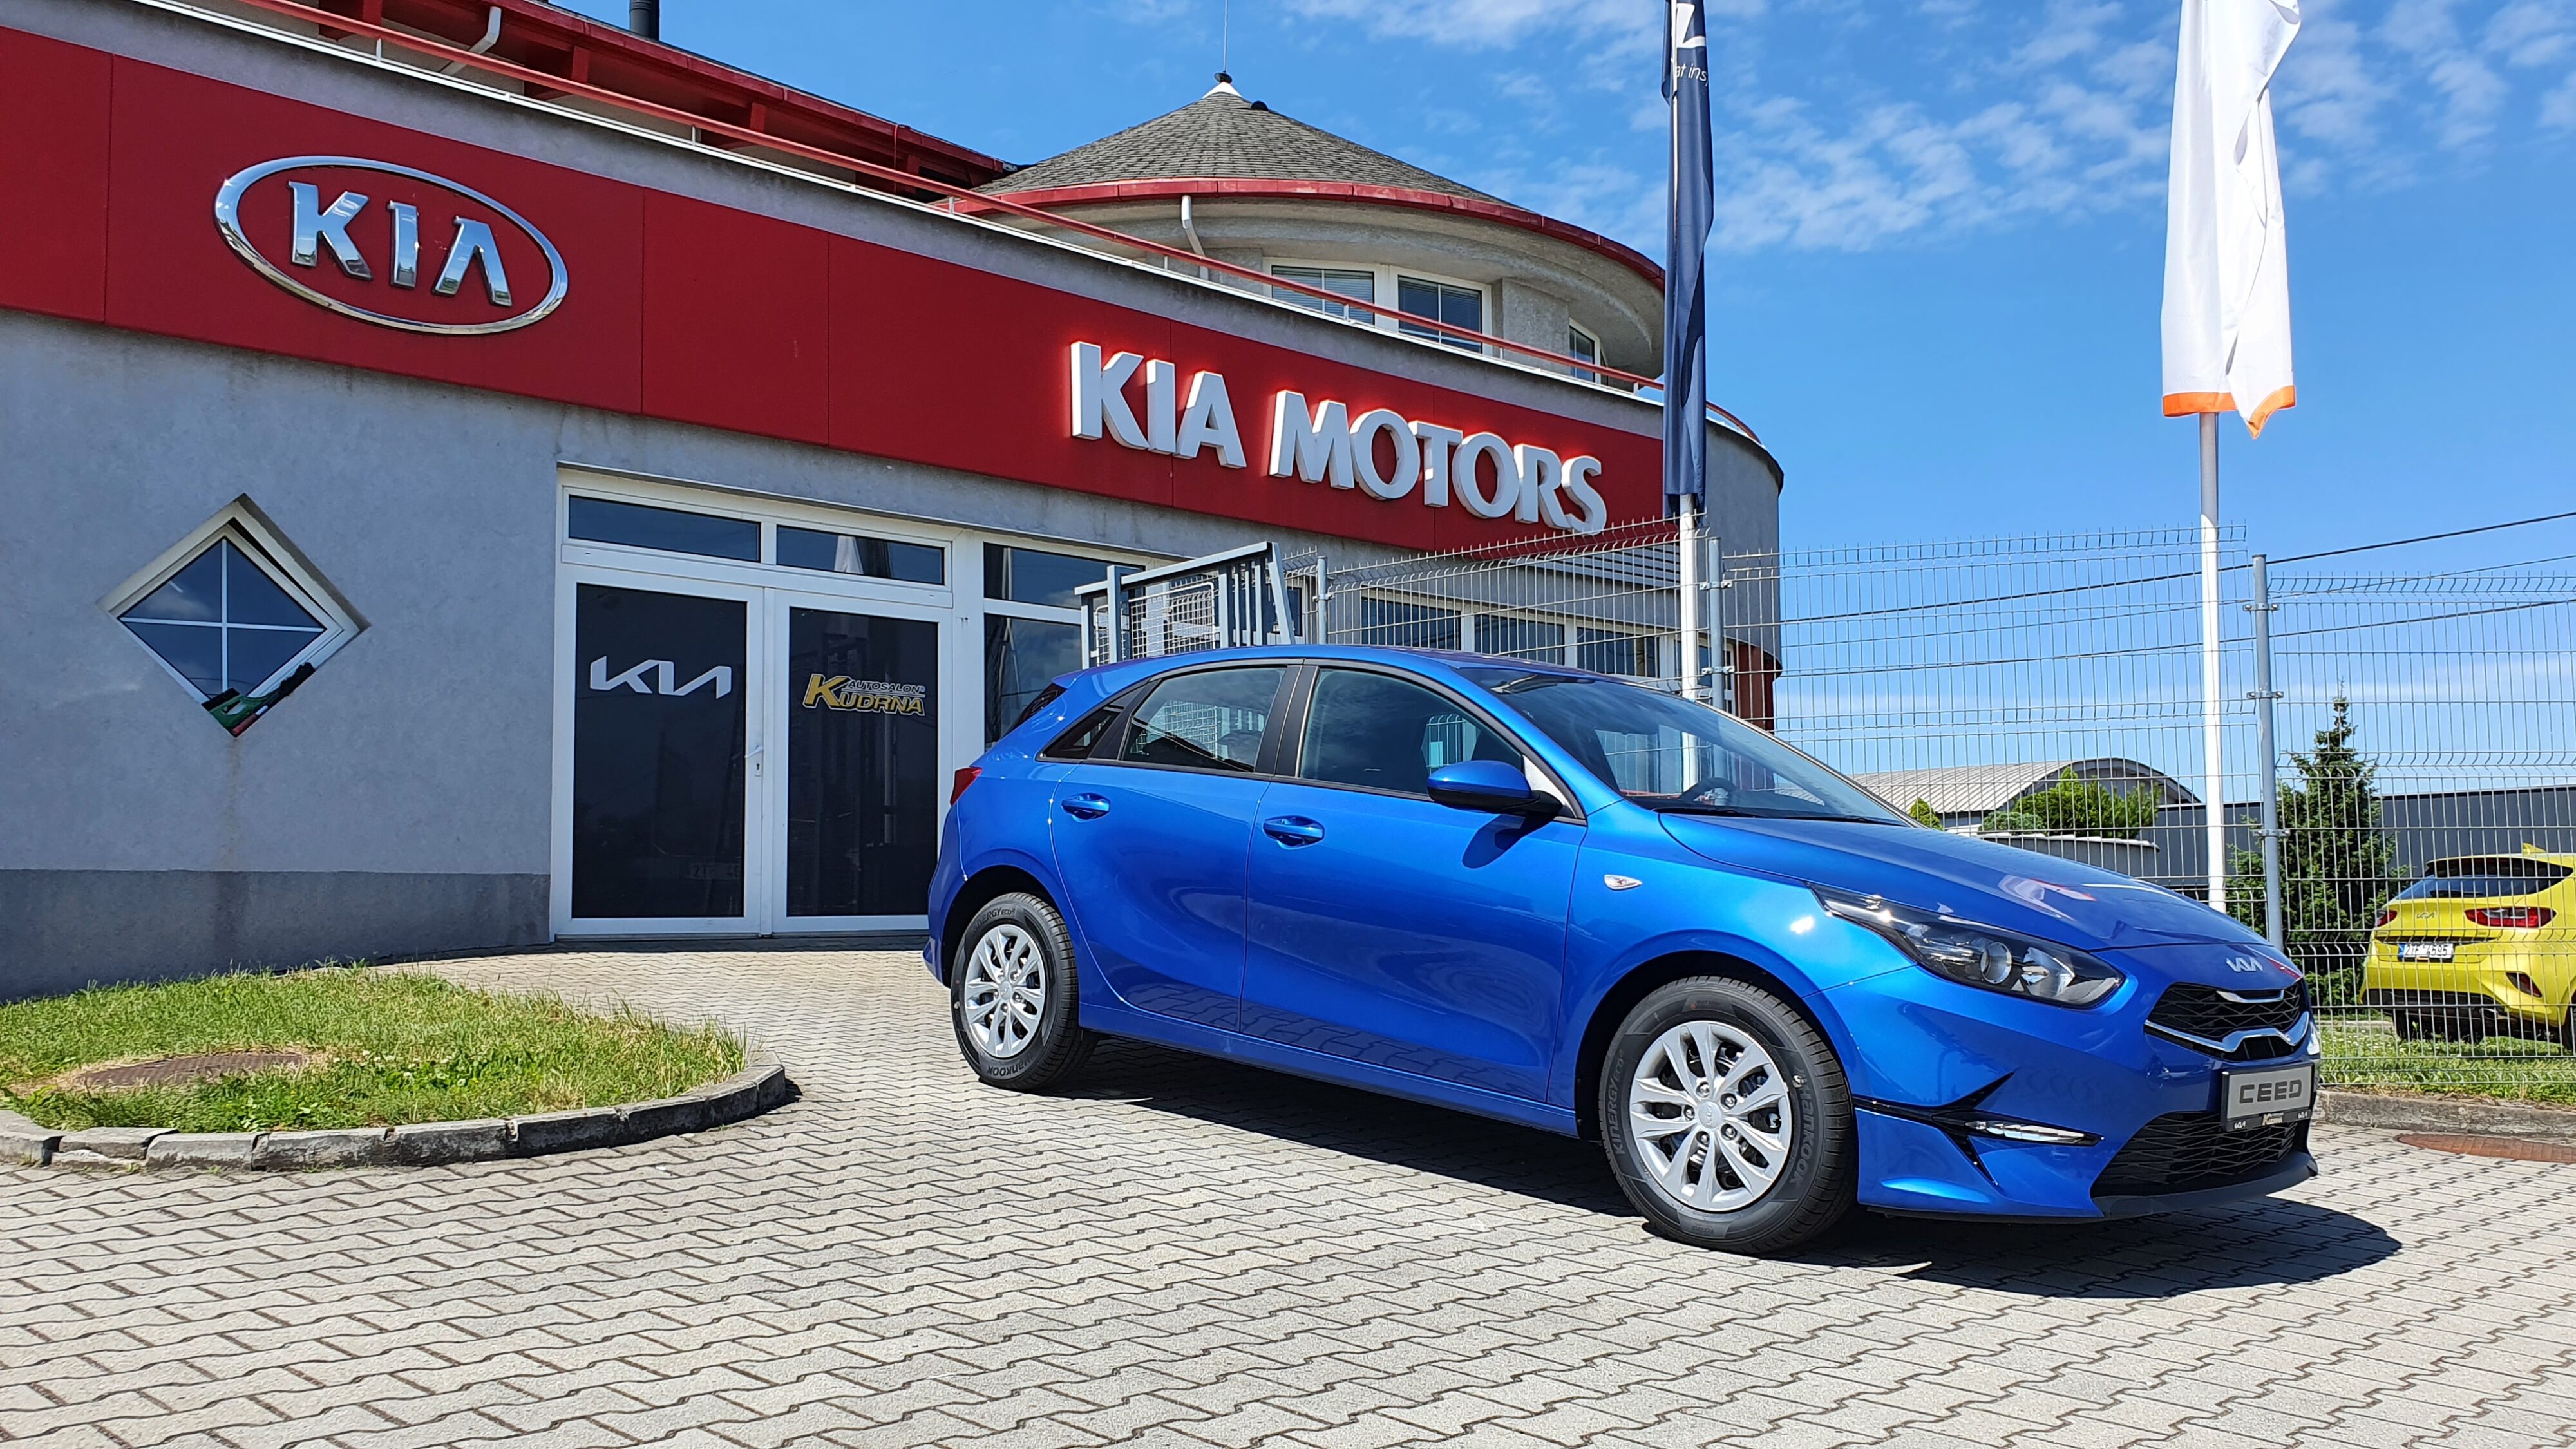 Autosalon Kudrna - Autorizovaný prodejce vozů KIA MOTORS